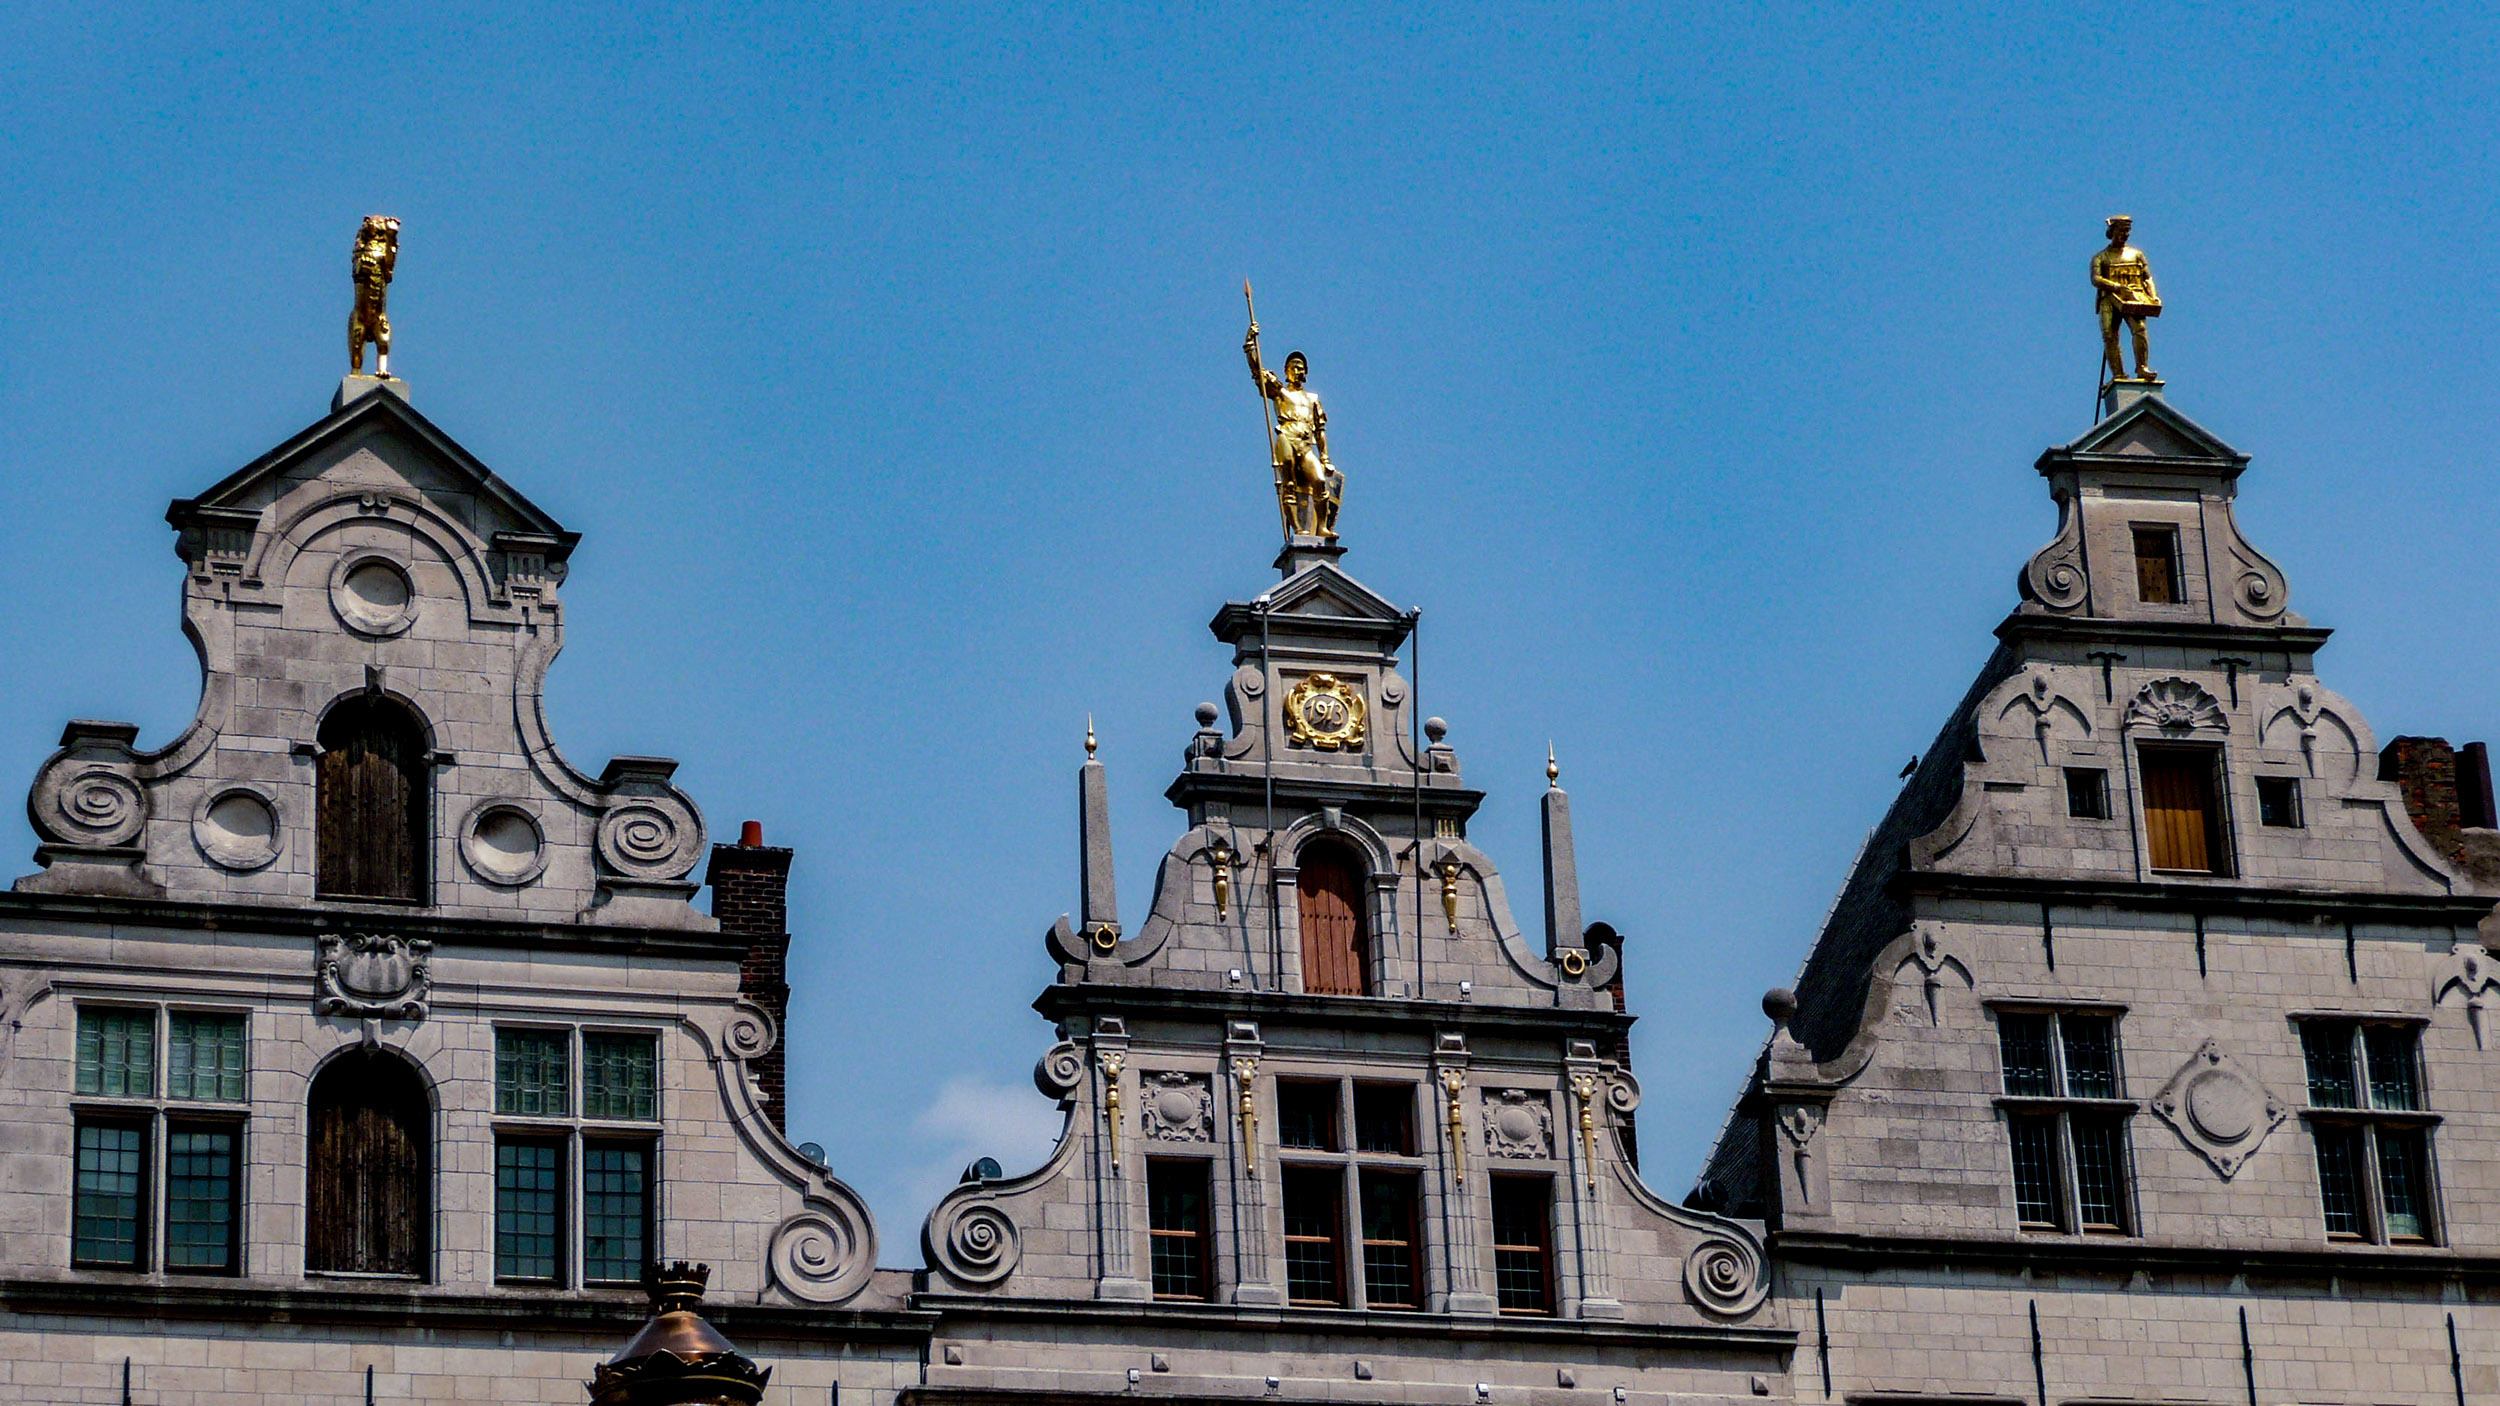 Tops of buildings in Antwerp Belgium